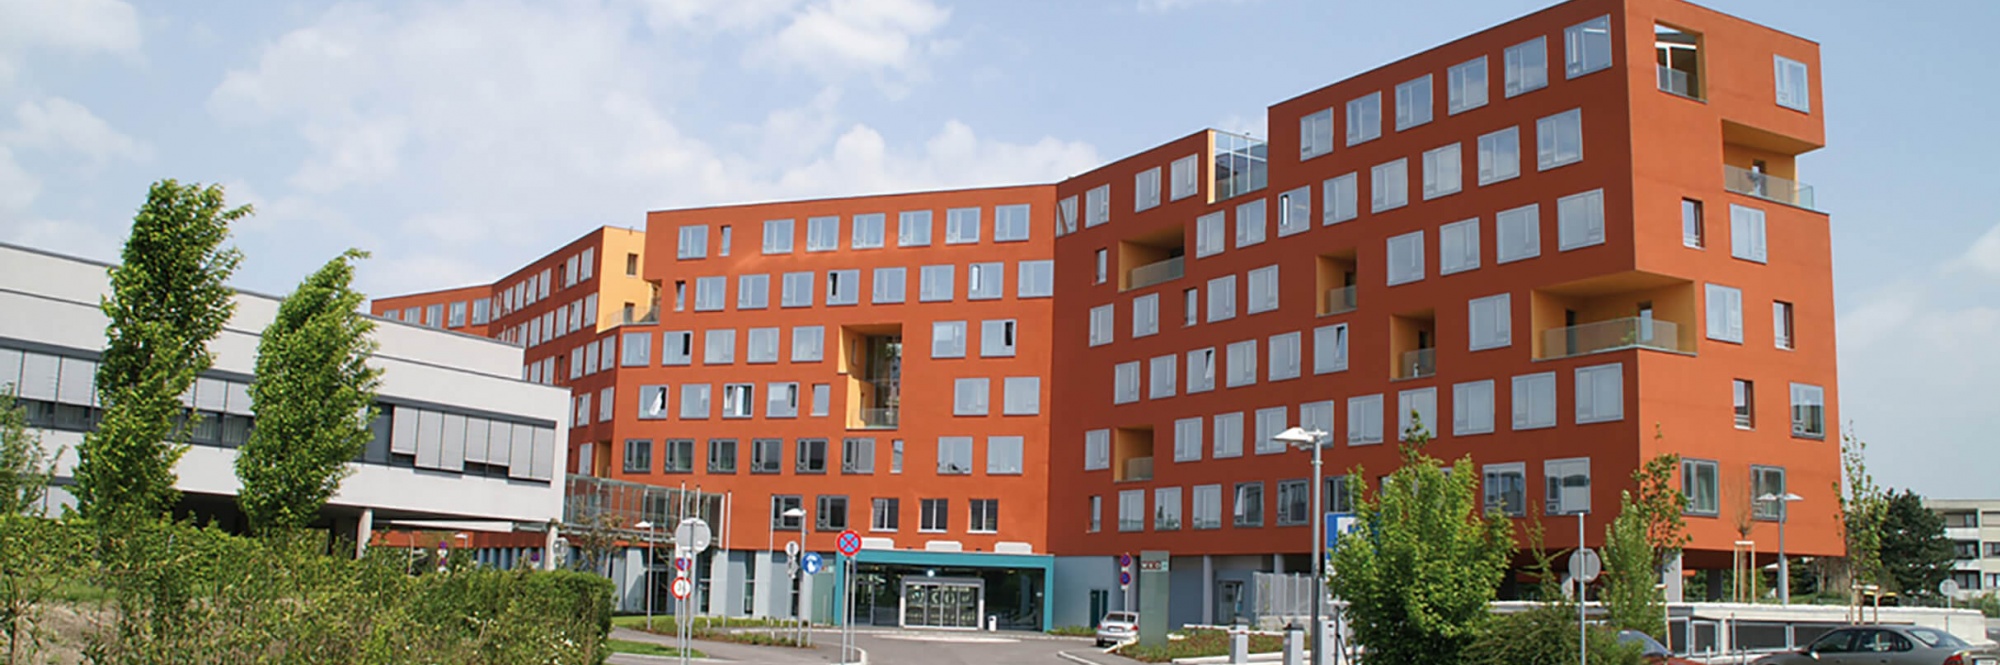 Futuristisch wirkendes Gebäude der Wirtschaftskammer Niederösterreich mit vielen quadratischen Fenstern und oranger Fassade